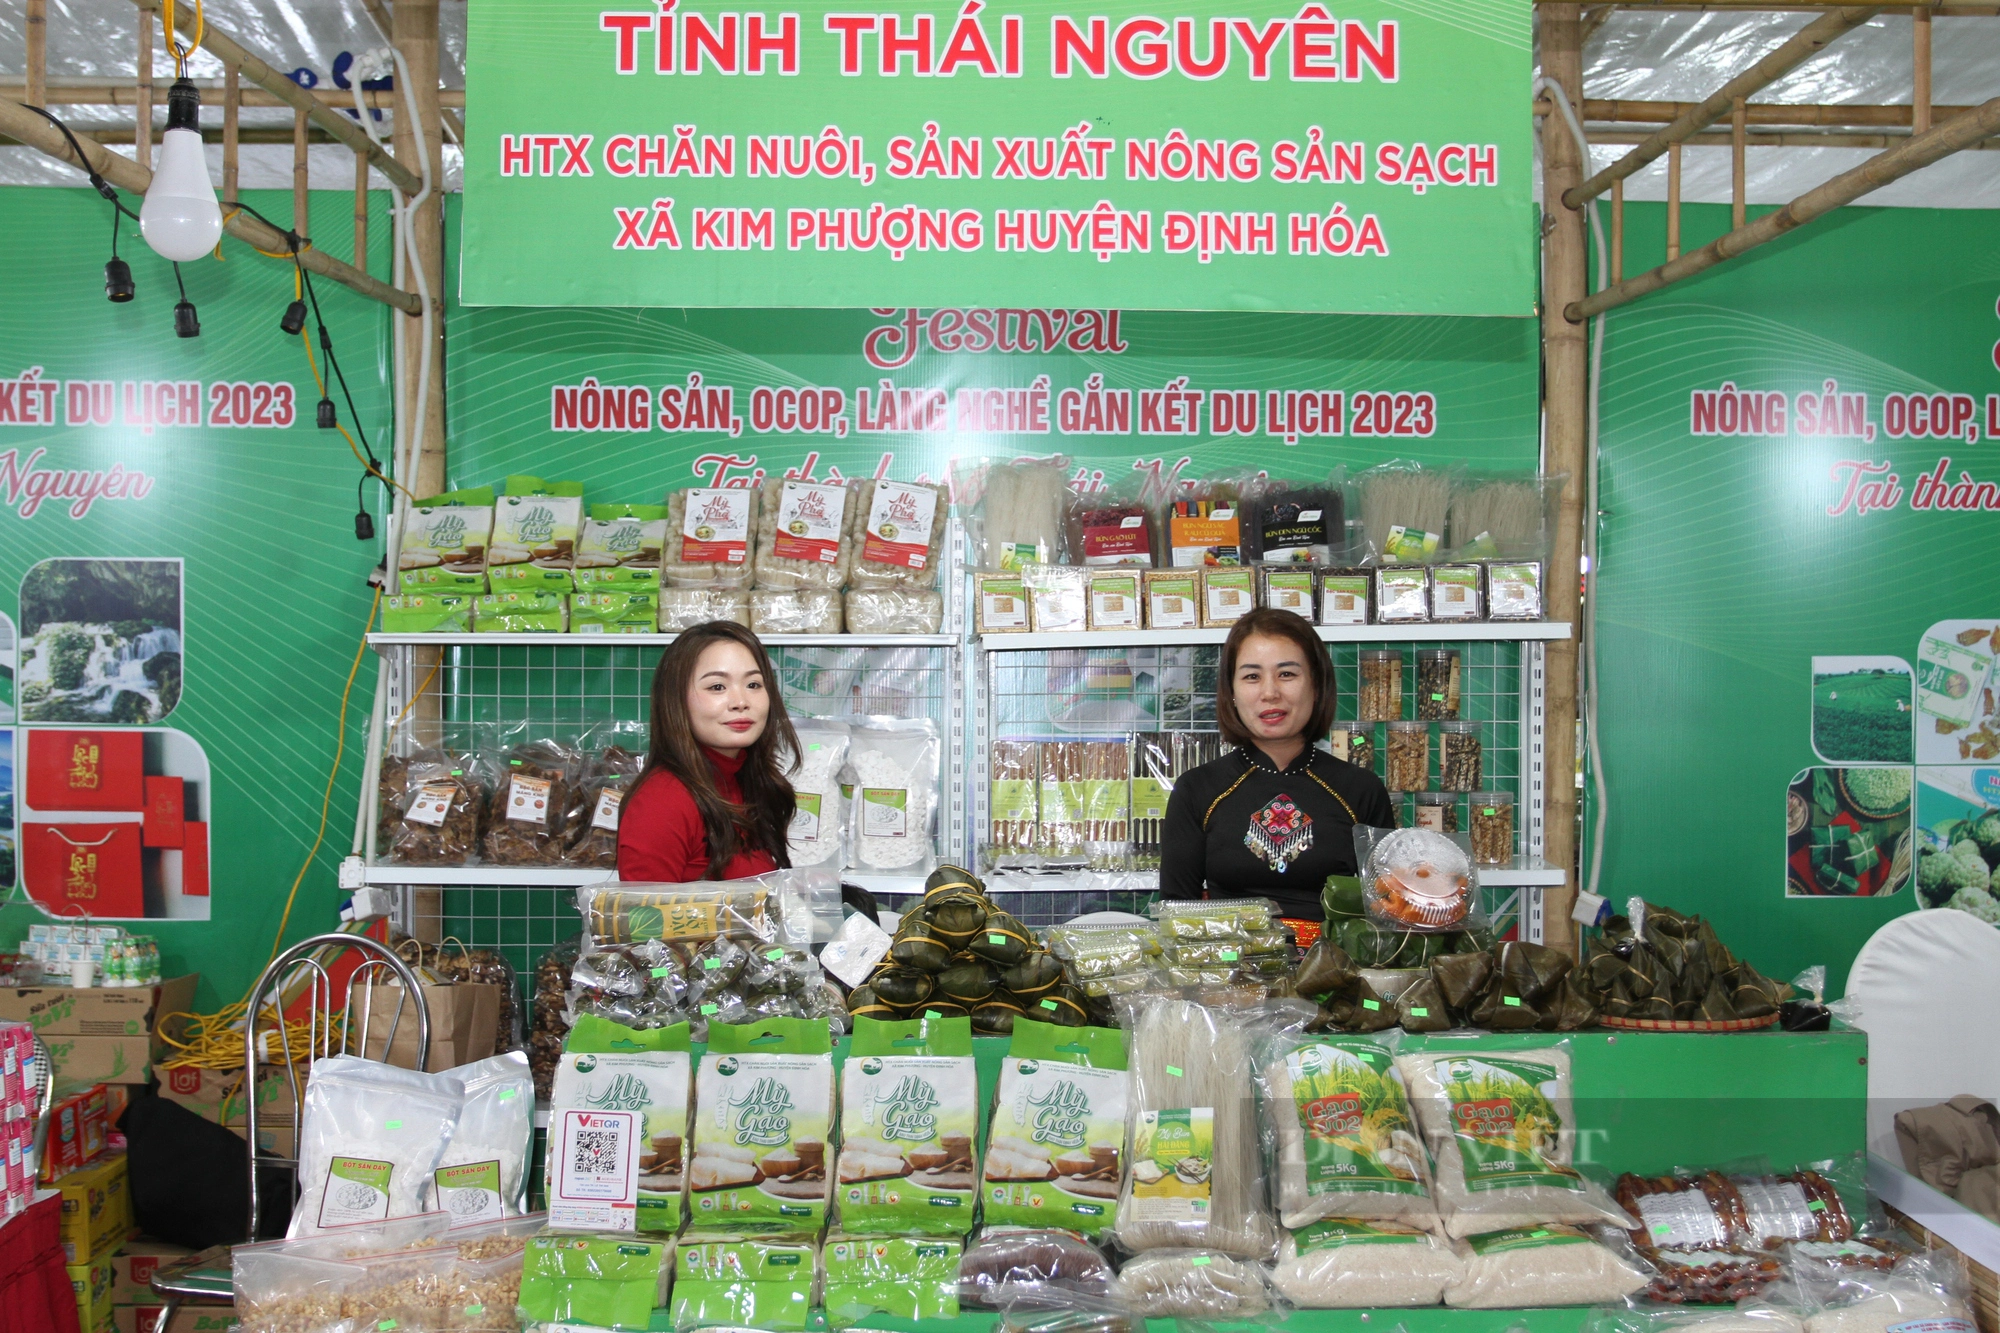 Festival Nông sản, OCOP, làng nghề gắn kết du lịch - Thái Nguyên 2023: Quy tụ đặc sản vùng miền - Ảnh 2.